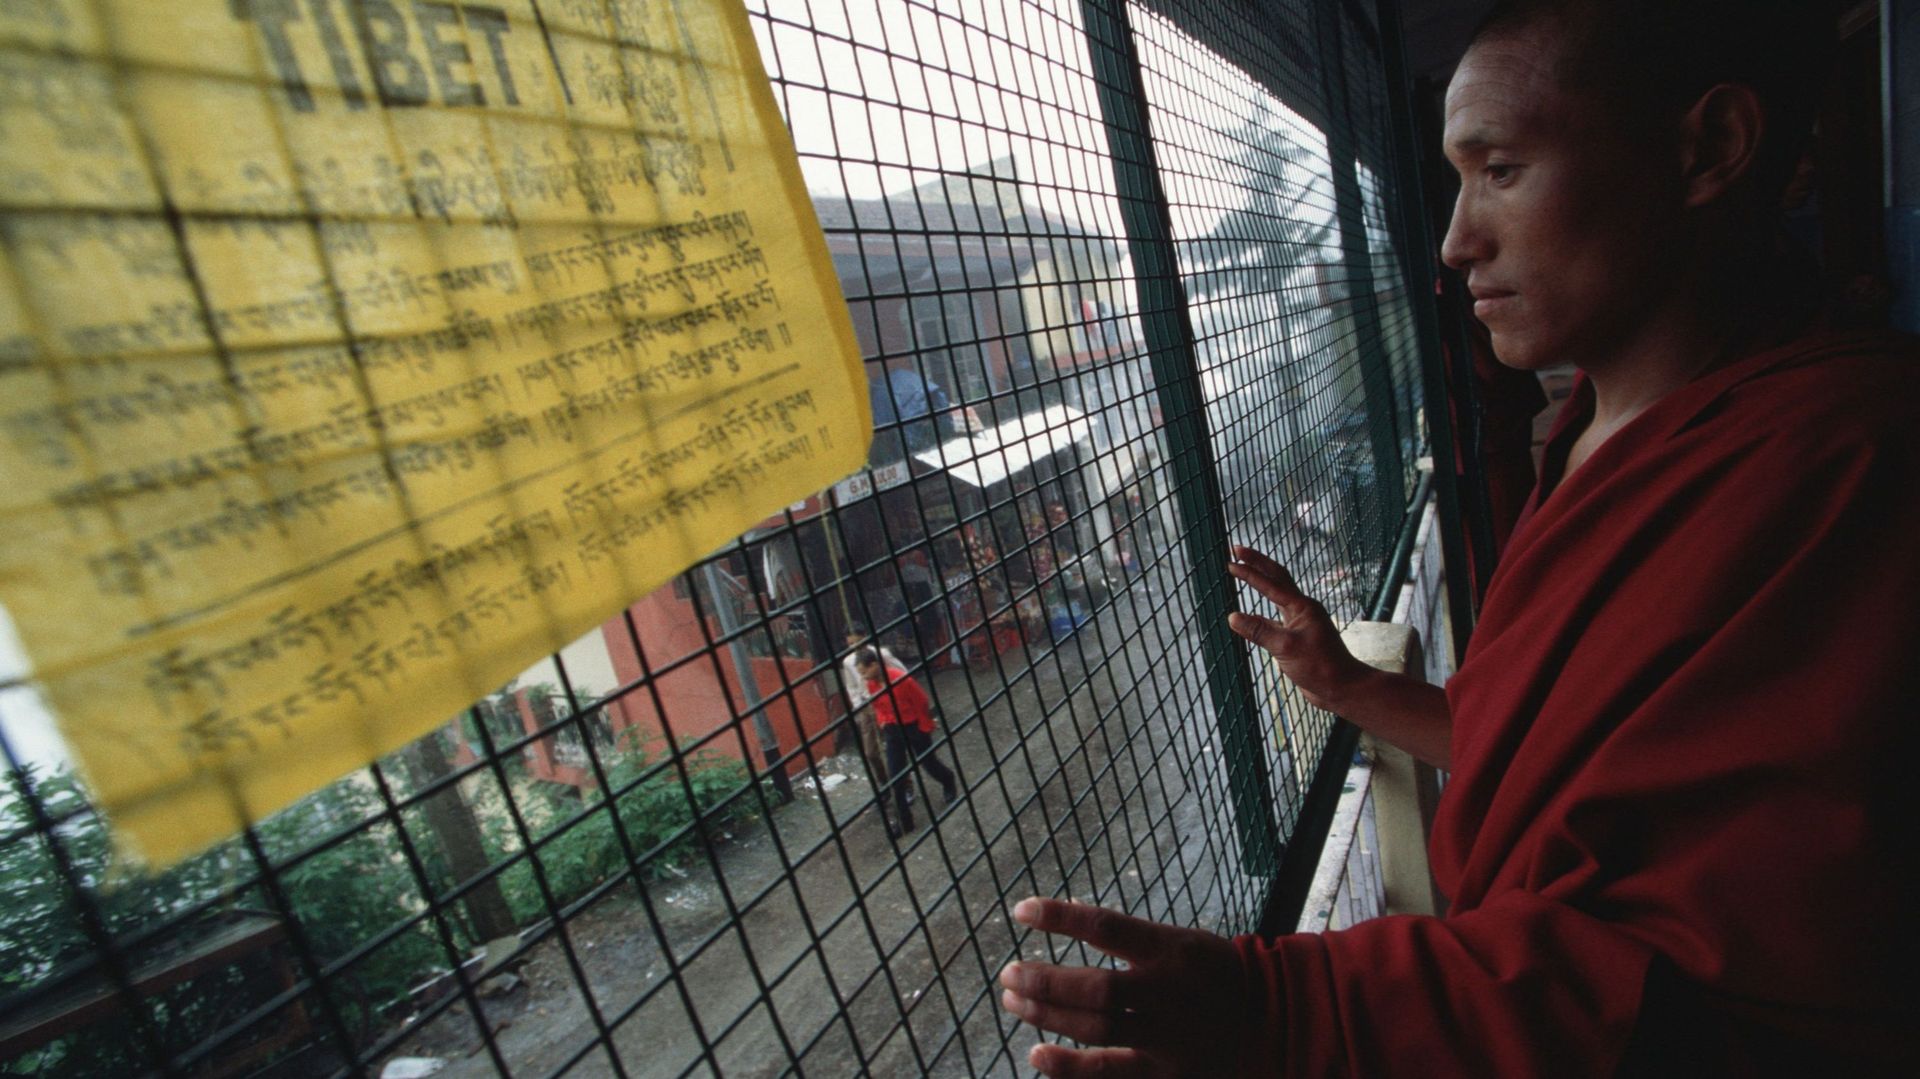 Un moine tibétain réfugié à Dharamsala, août 2000